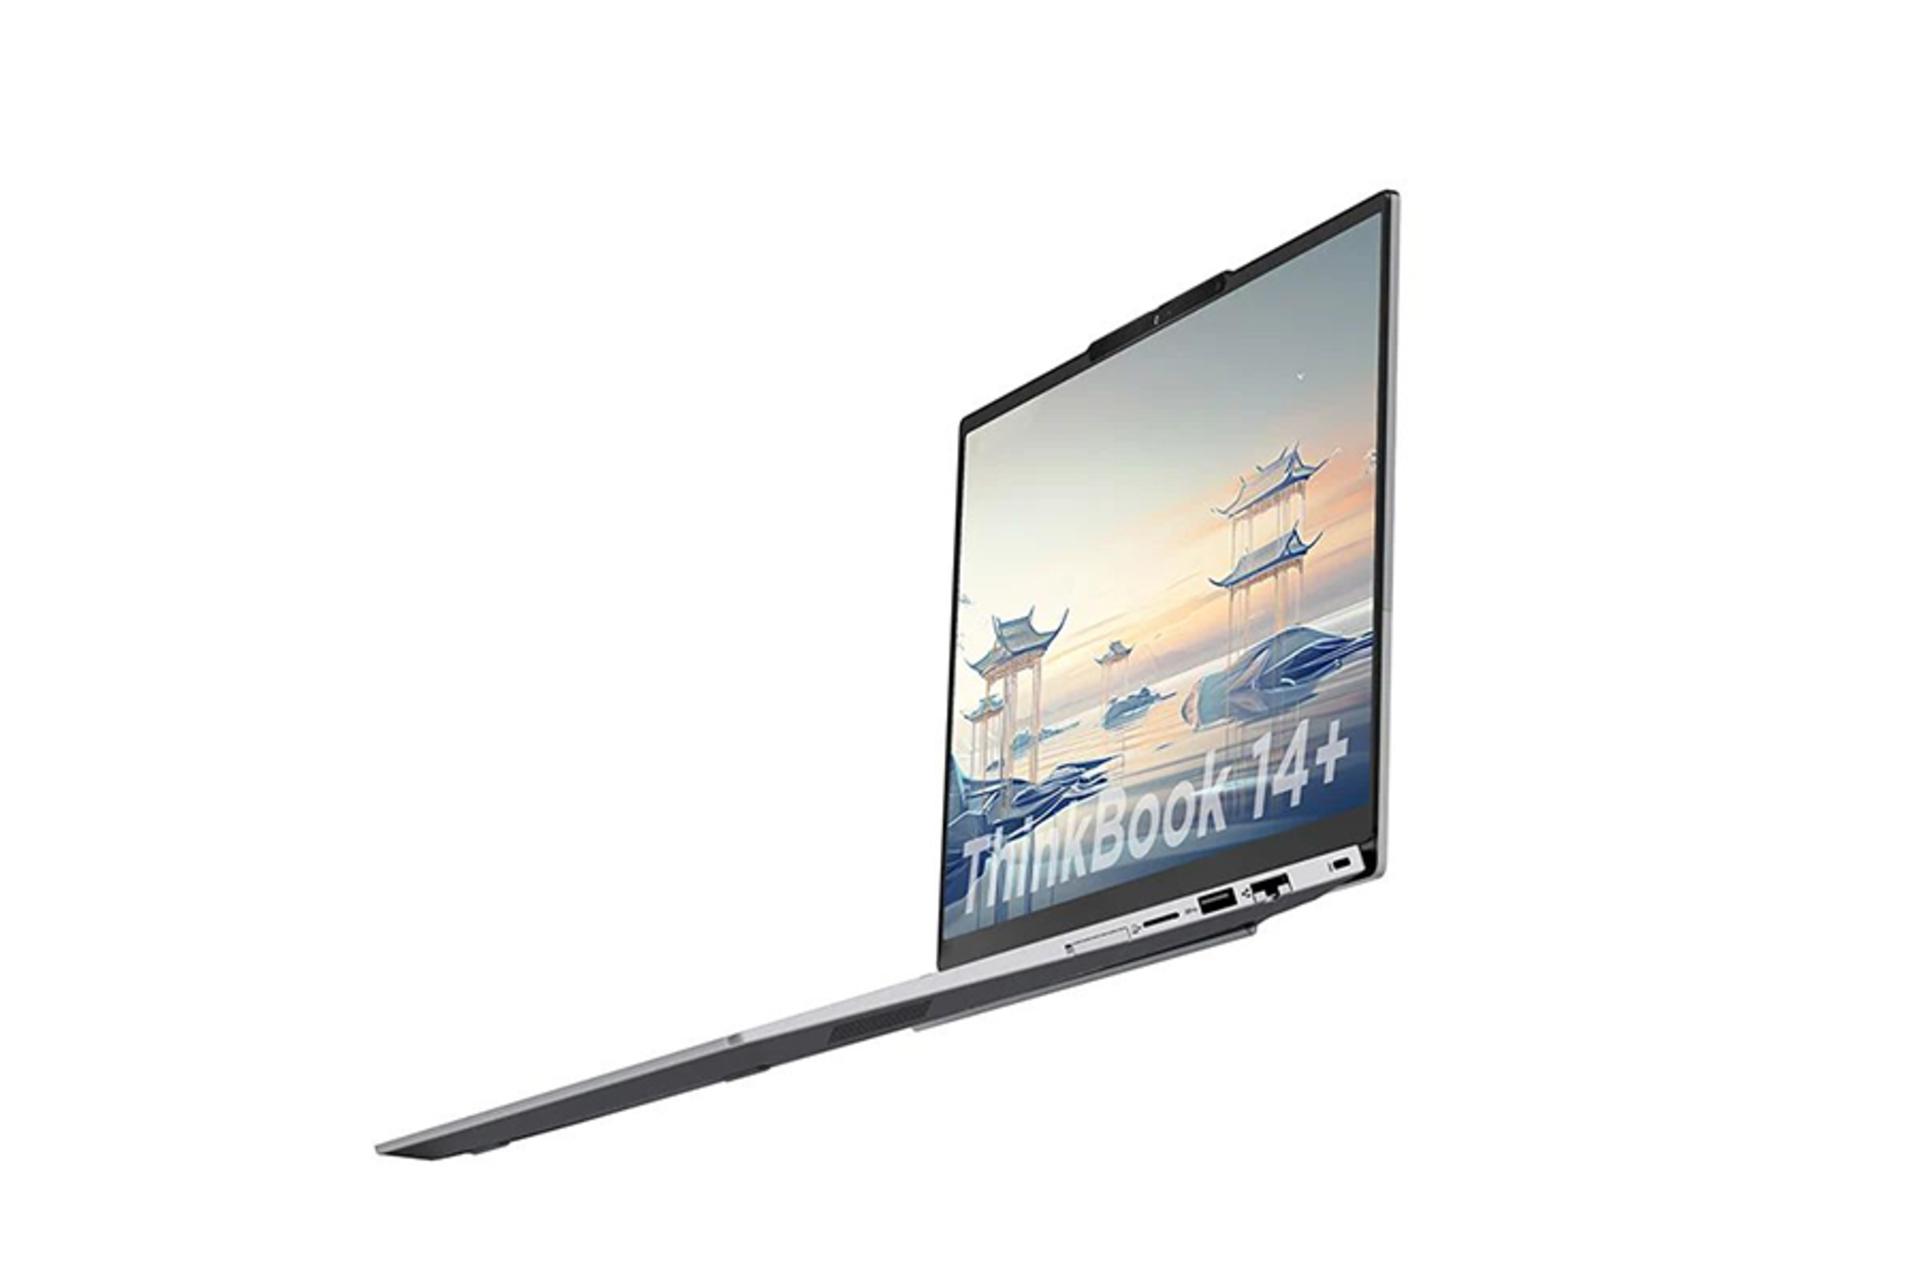 لپ تاپ لنوو Lenovo ThinkBook 14+ نمای راست صفحه نمایش و درگاه ها